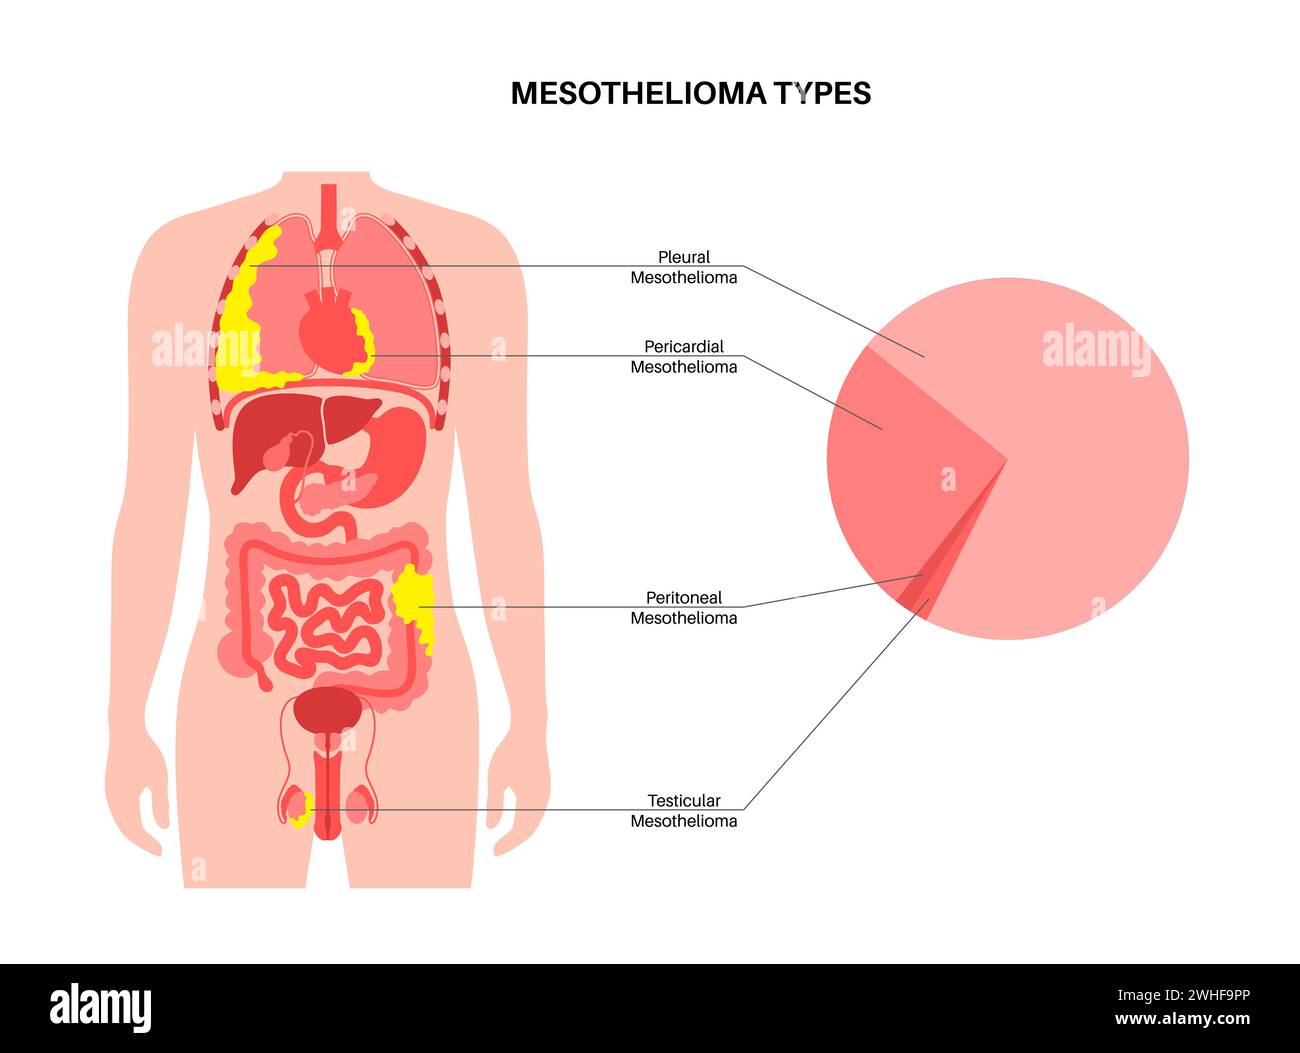 Mesothelioma tumour types, illustration Stock Photo